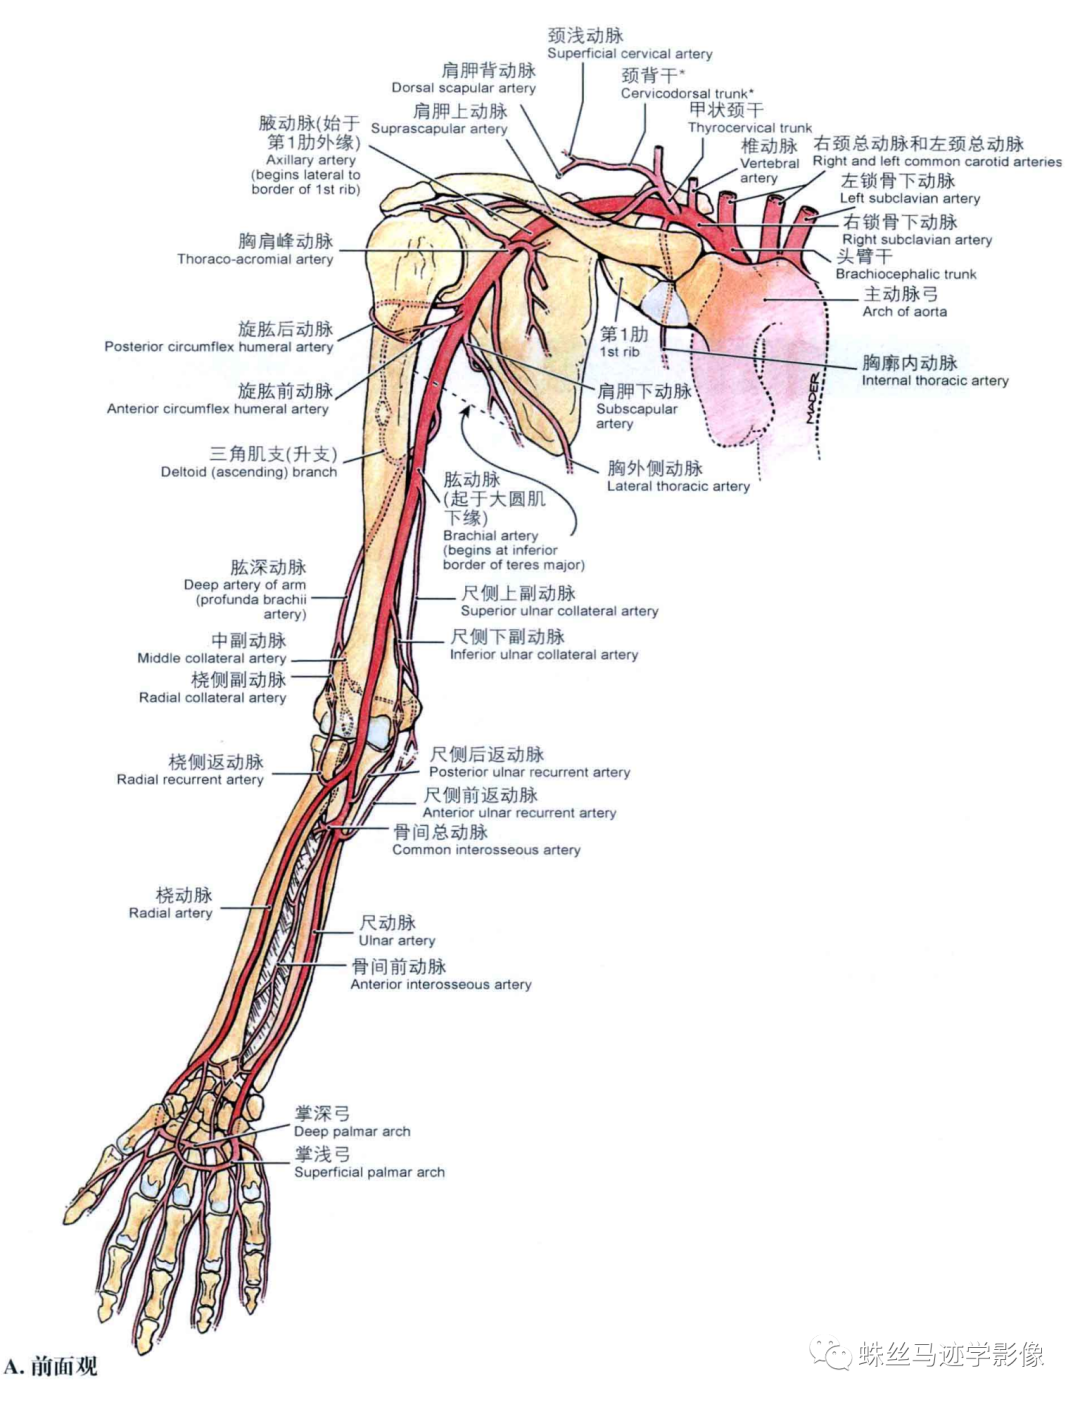 锁骨下和上肢动脉的解剖